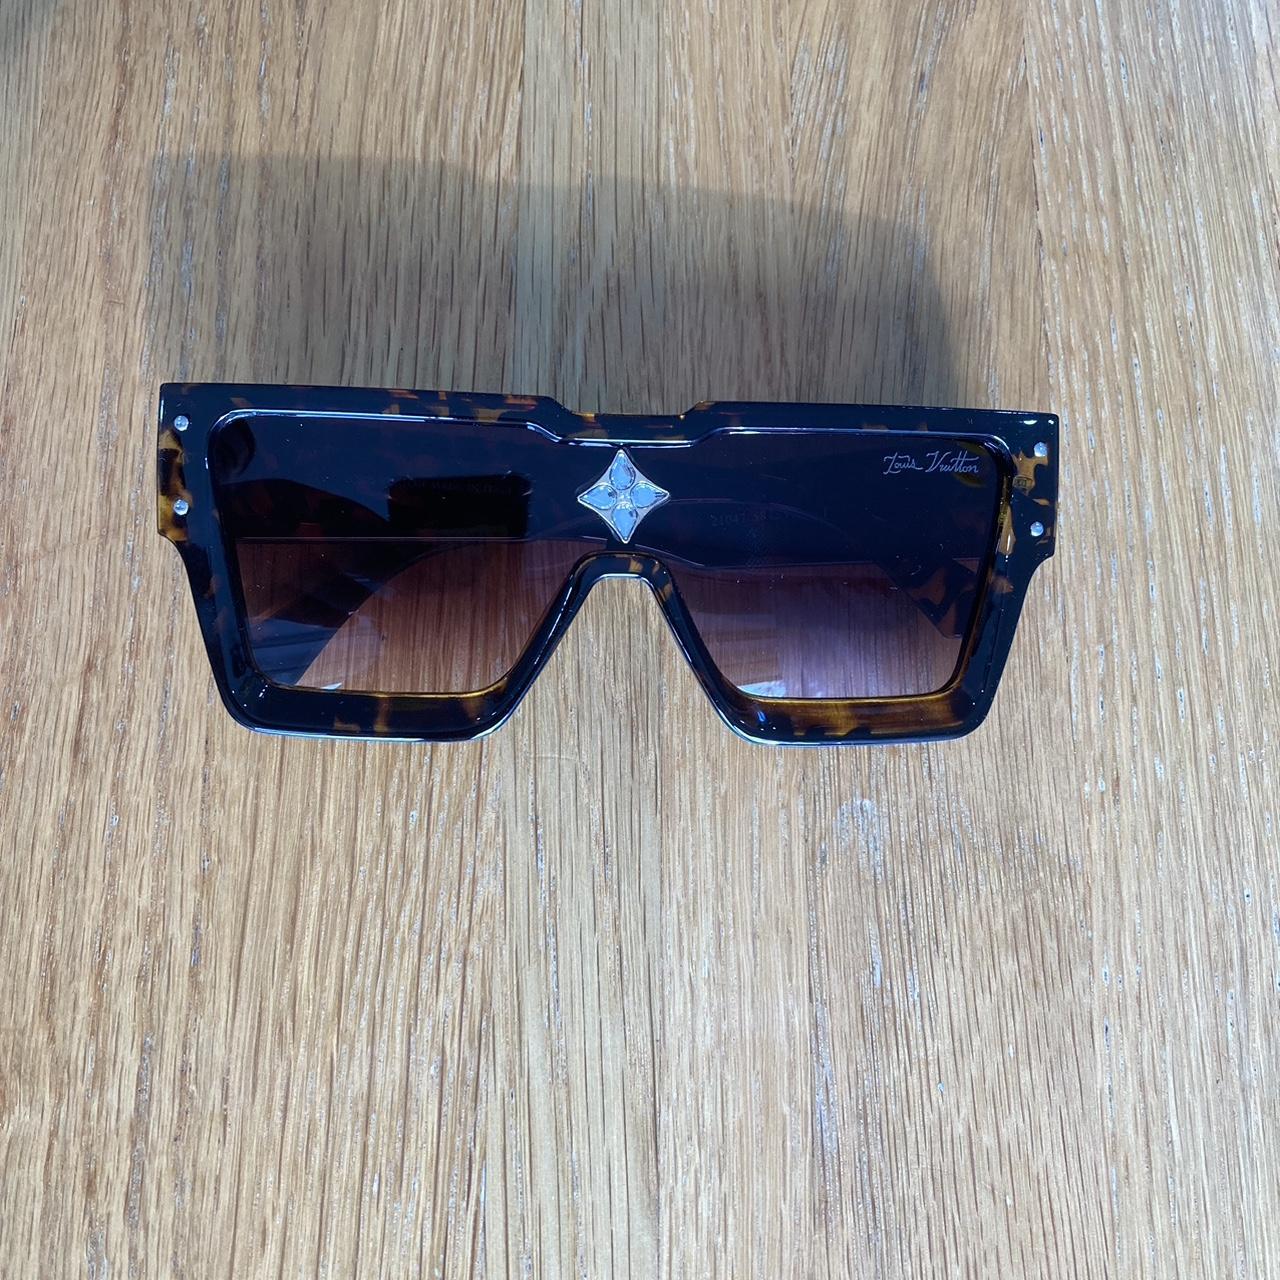 Authentic Louis Vuitton 1.1 Millionaires Sunglasses - Depop